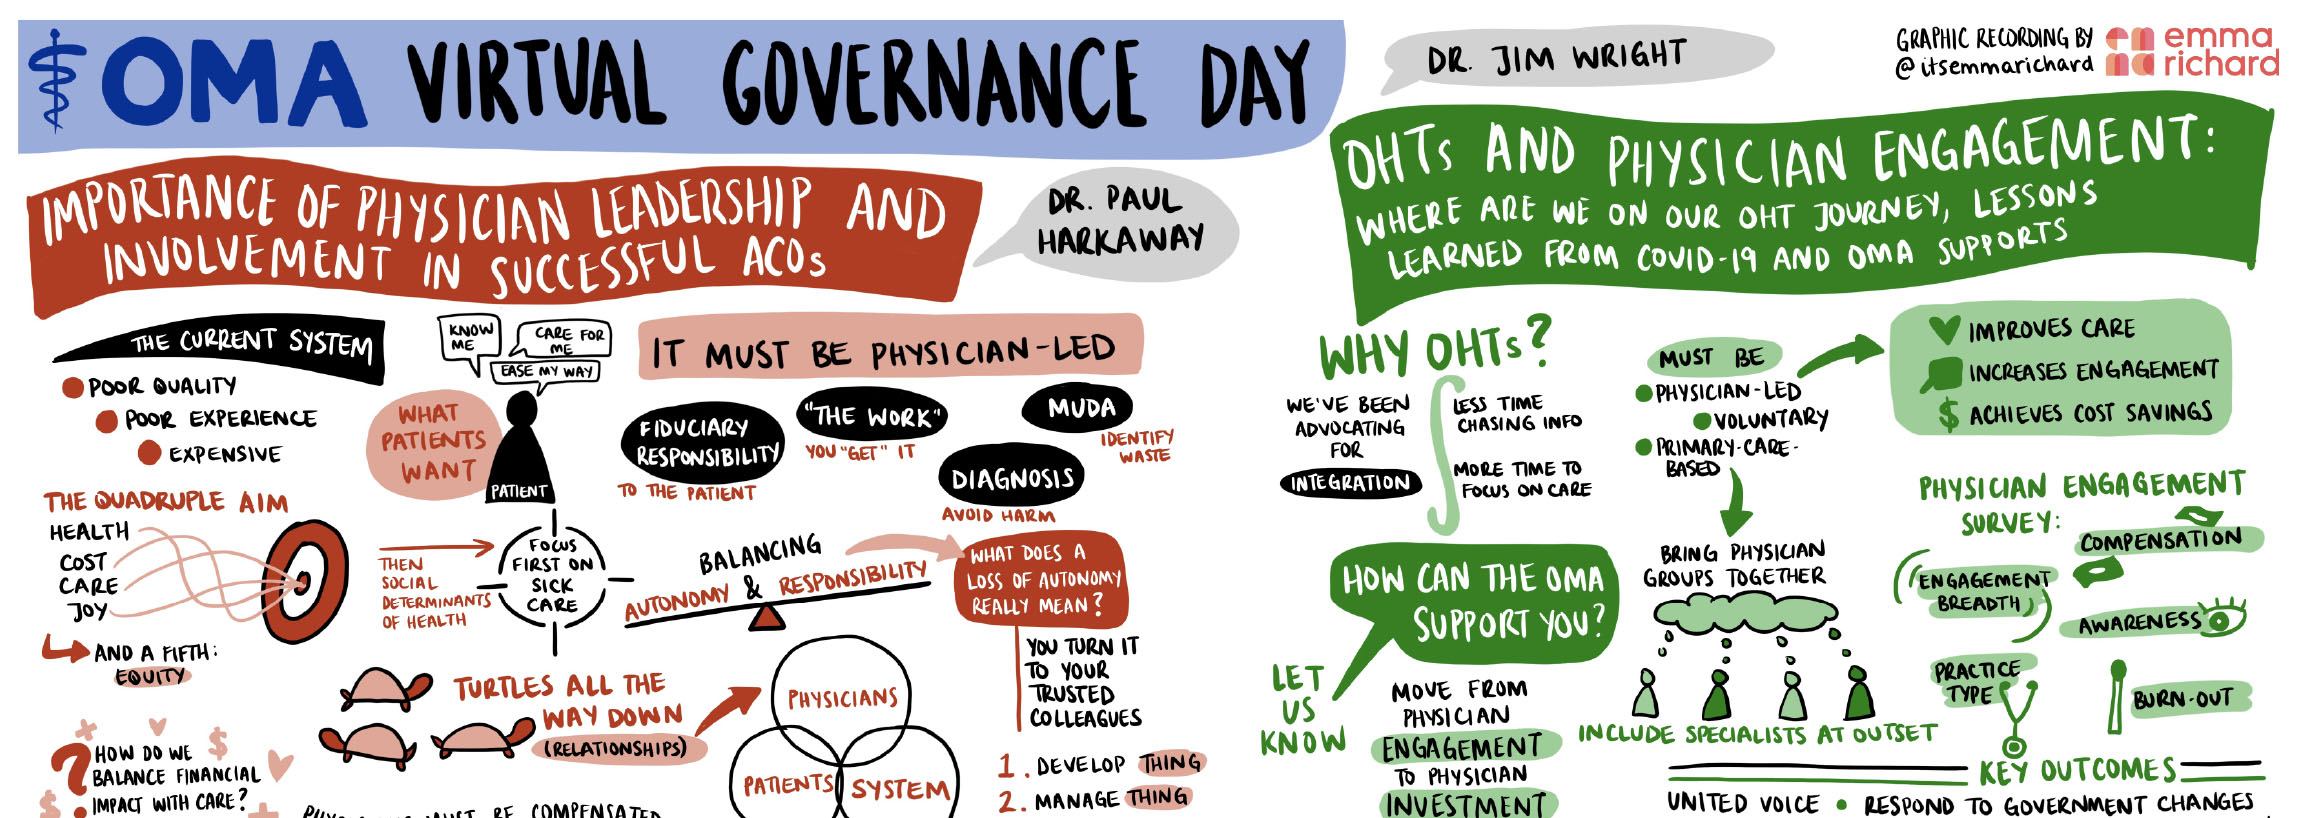 OMA Virtual Governance Day